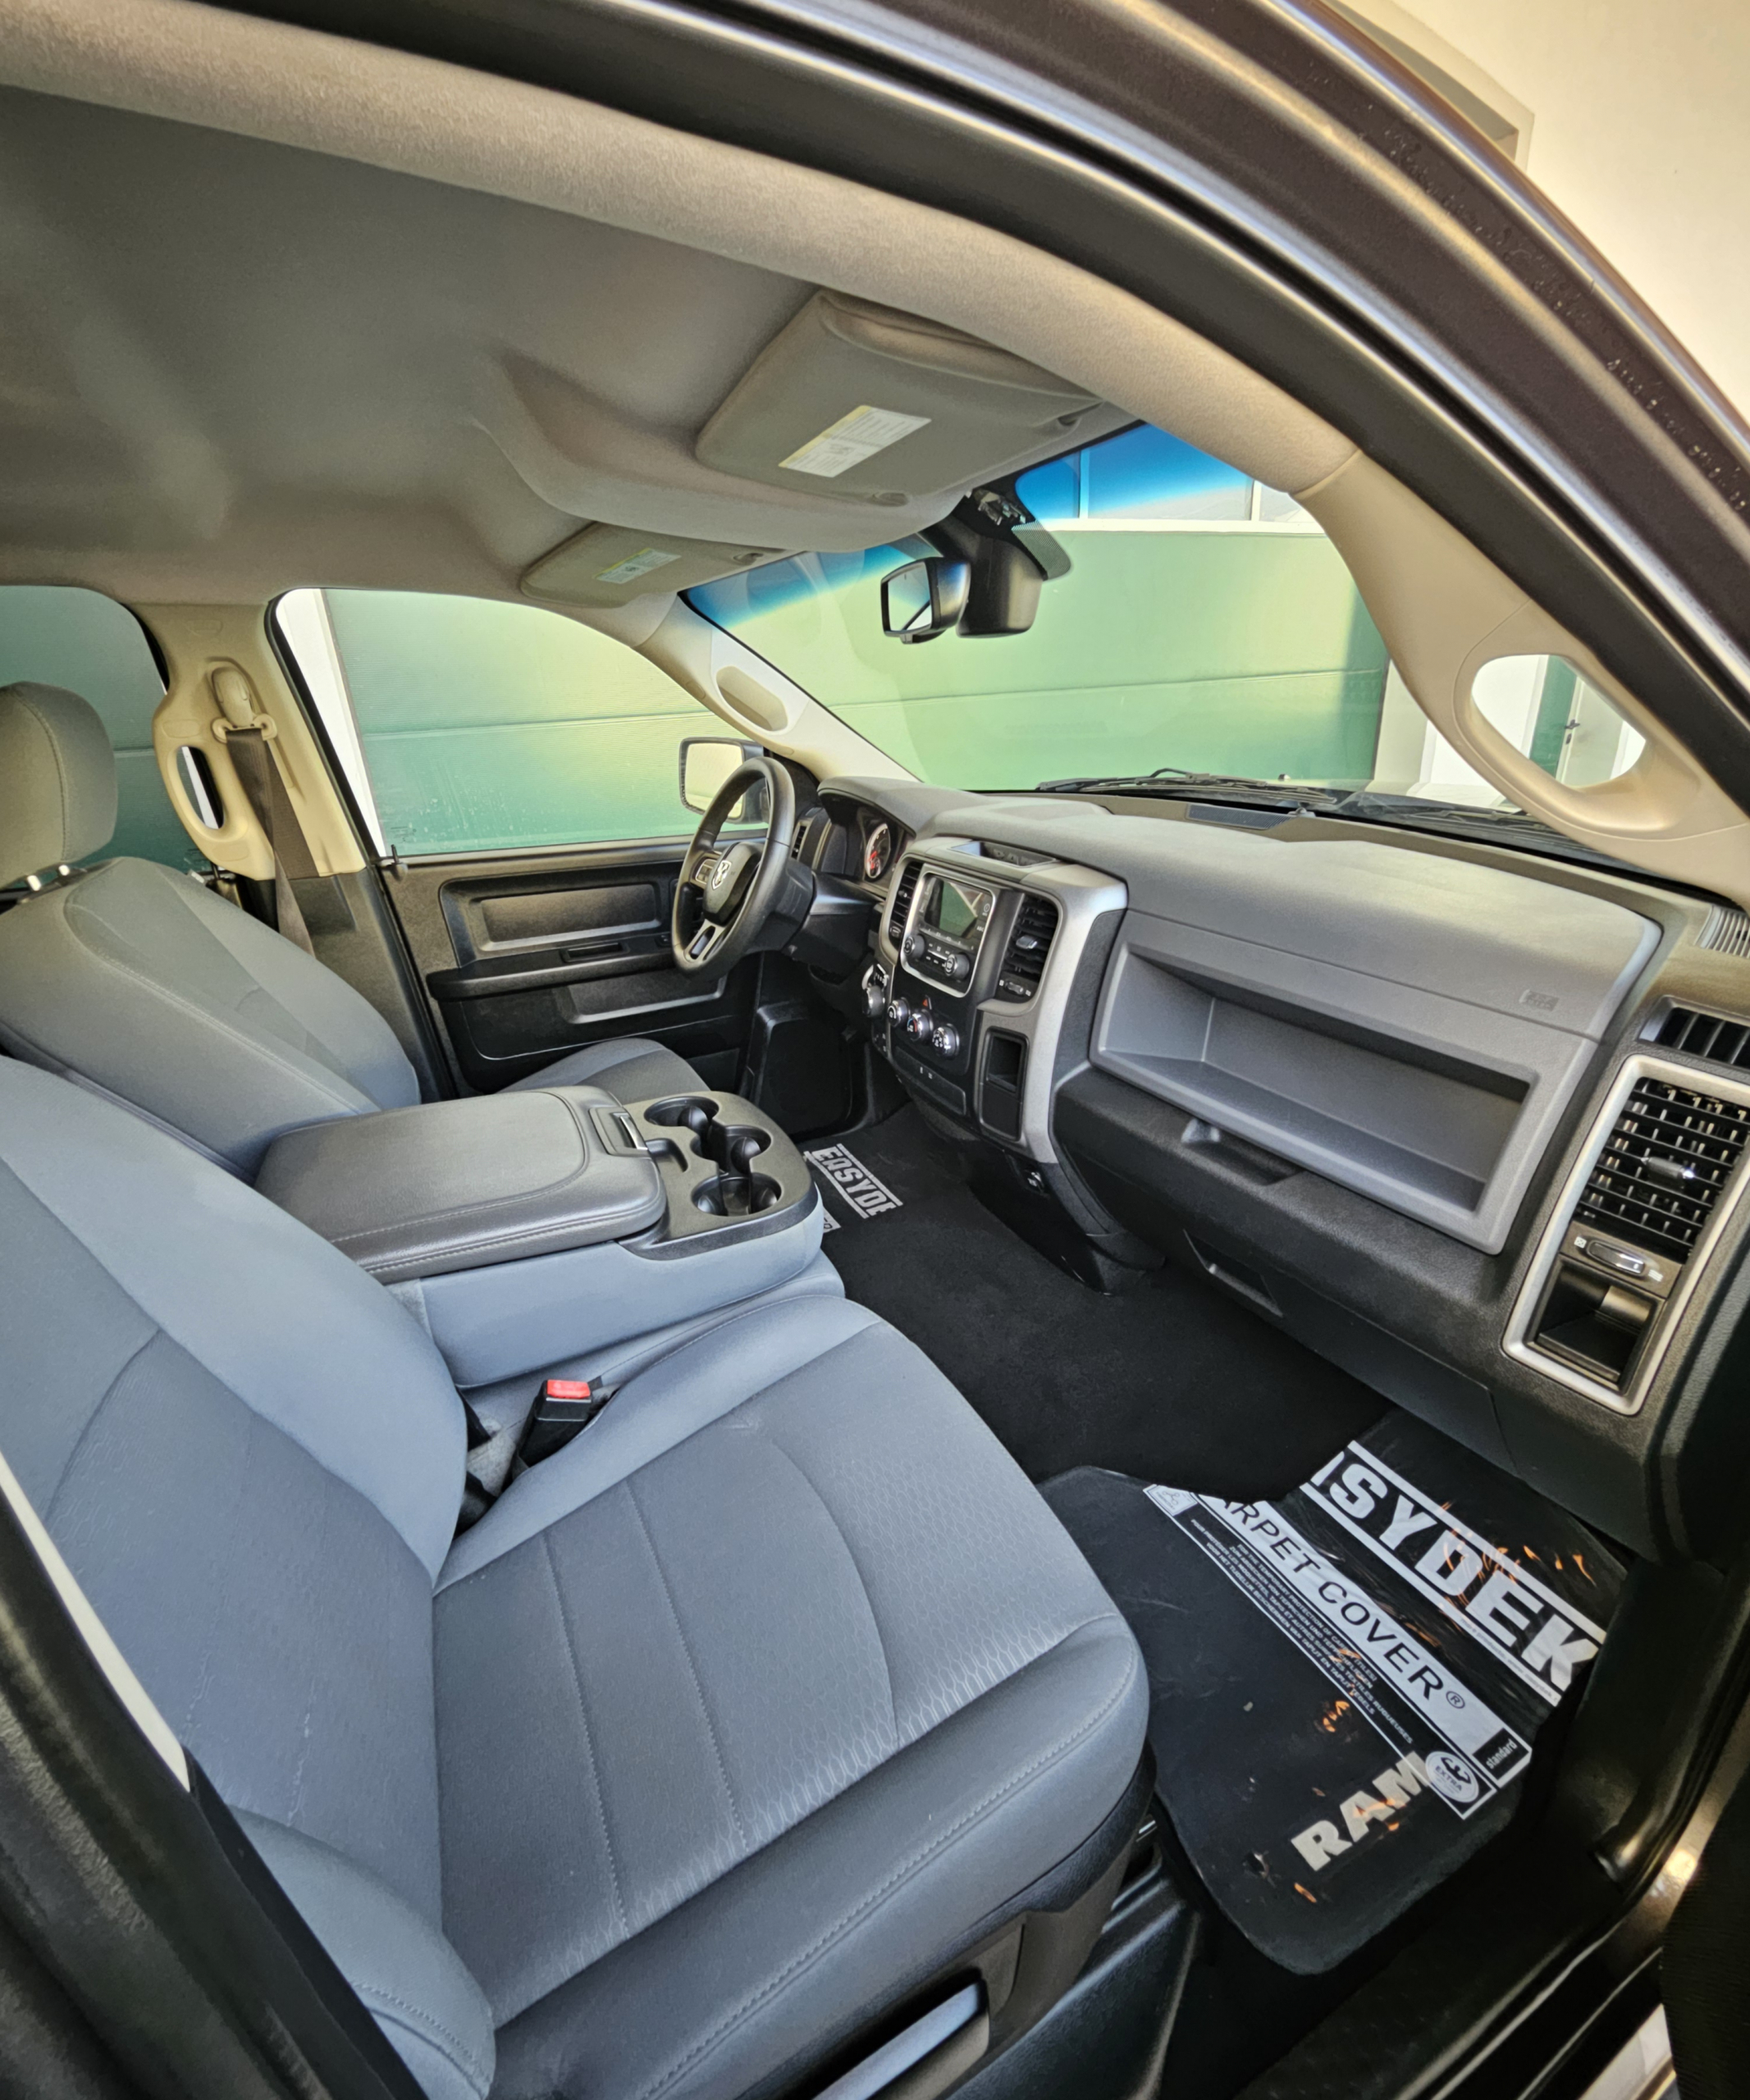 2015 Dodge Ram 1500 v8 à vendre à Nantes